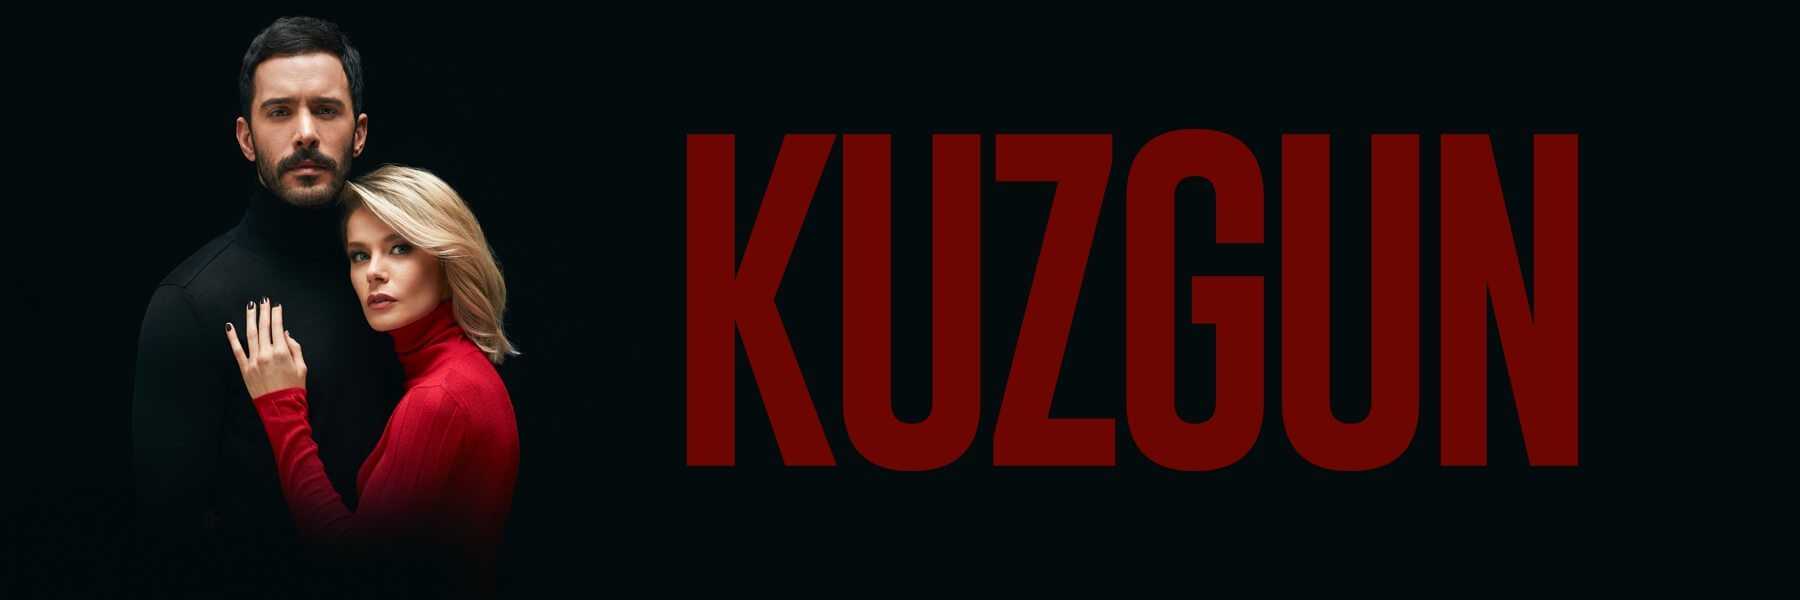 Kuzgun Episode 2 English Subtitles HD